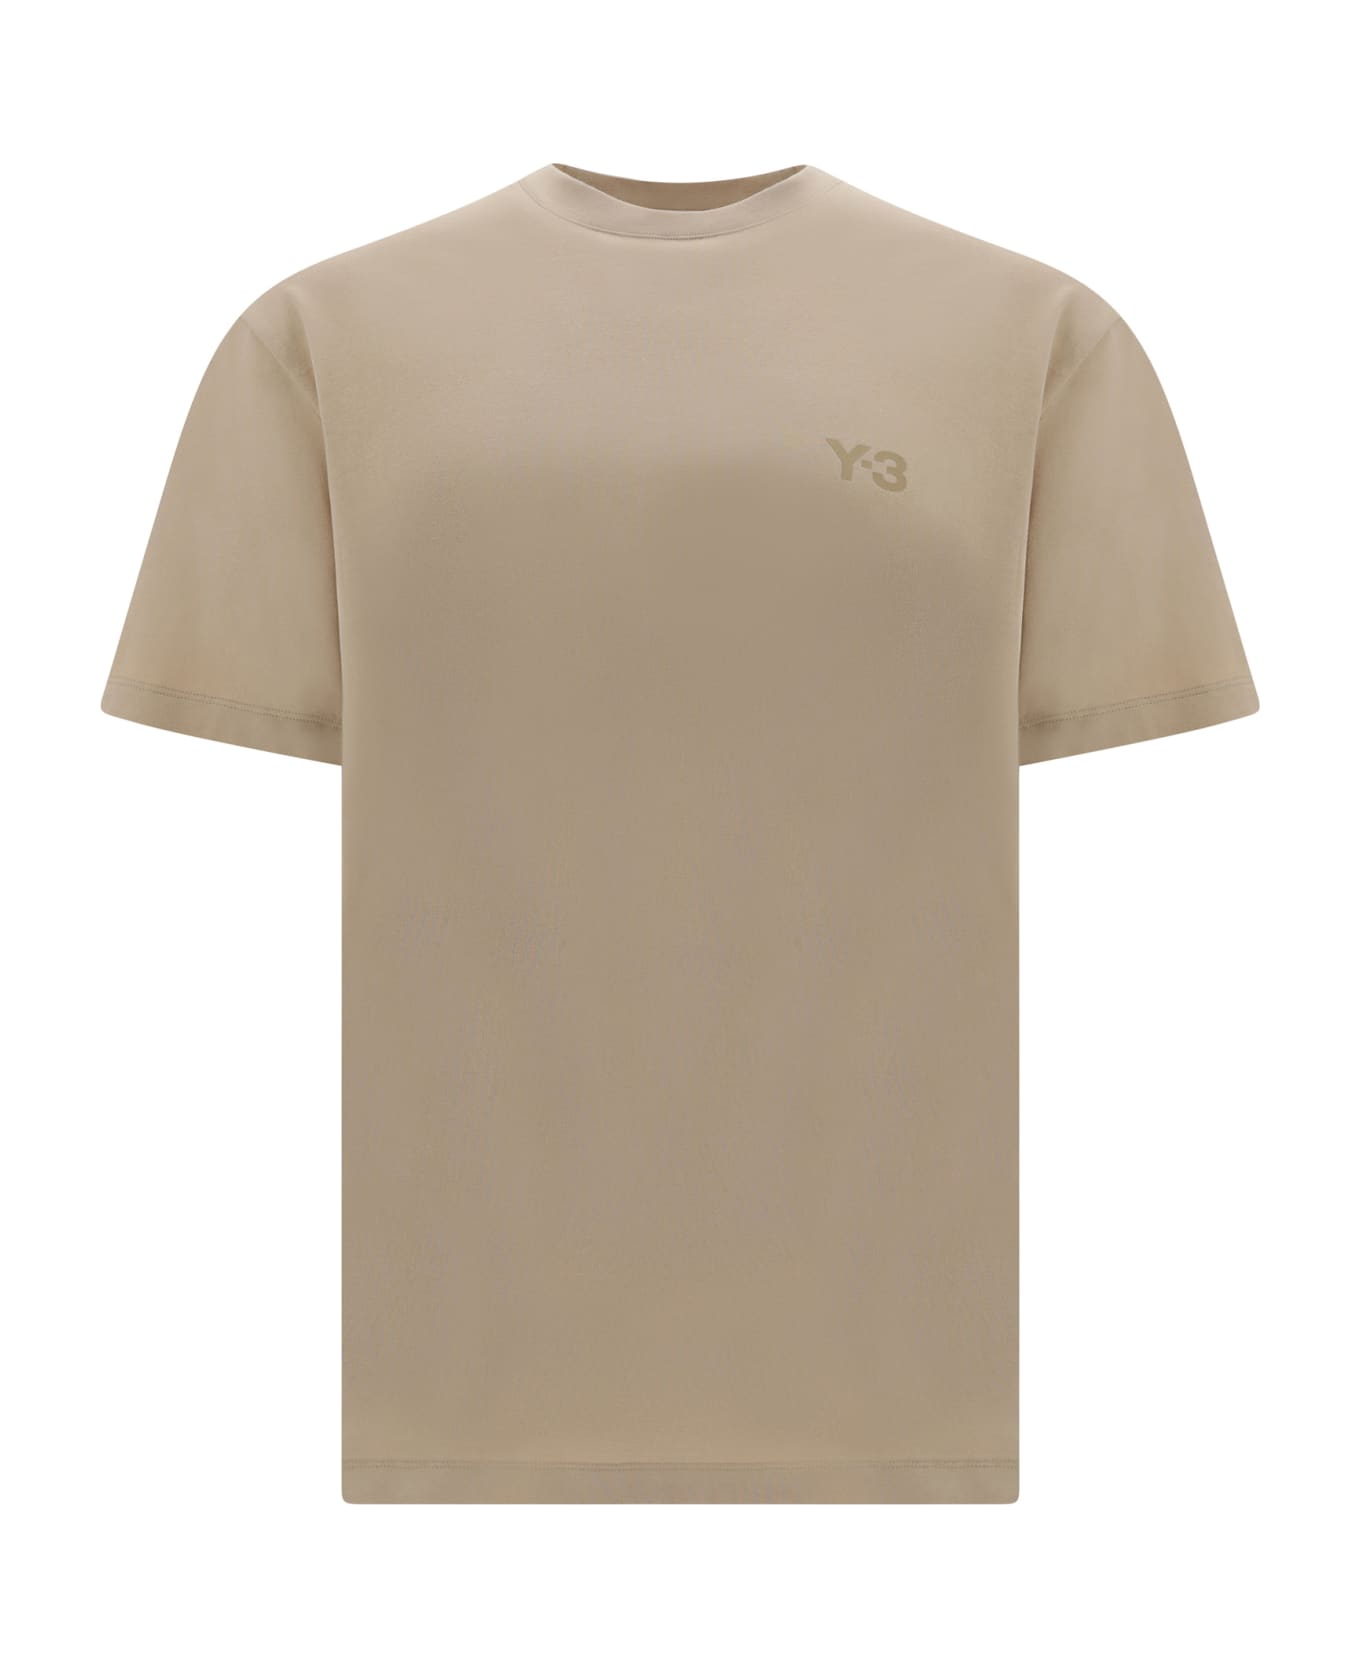 Y-3 T-shirt - Clabro